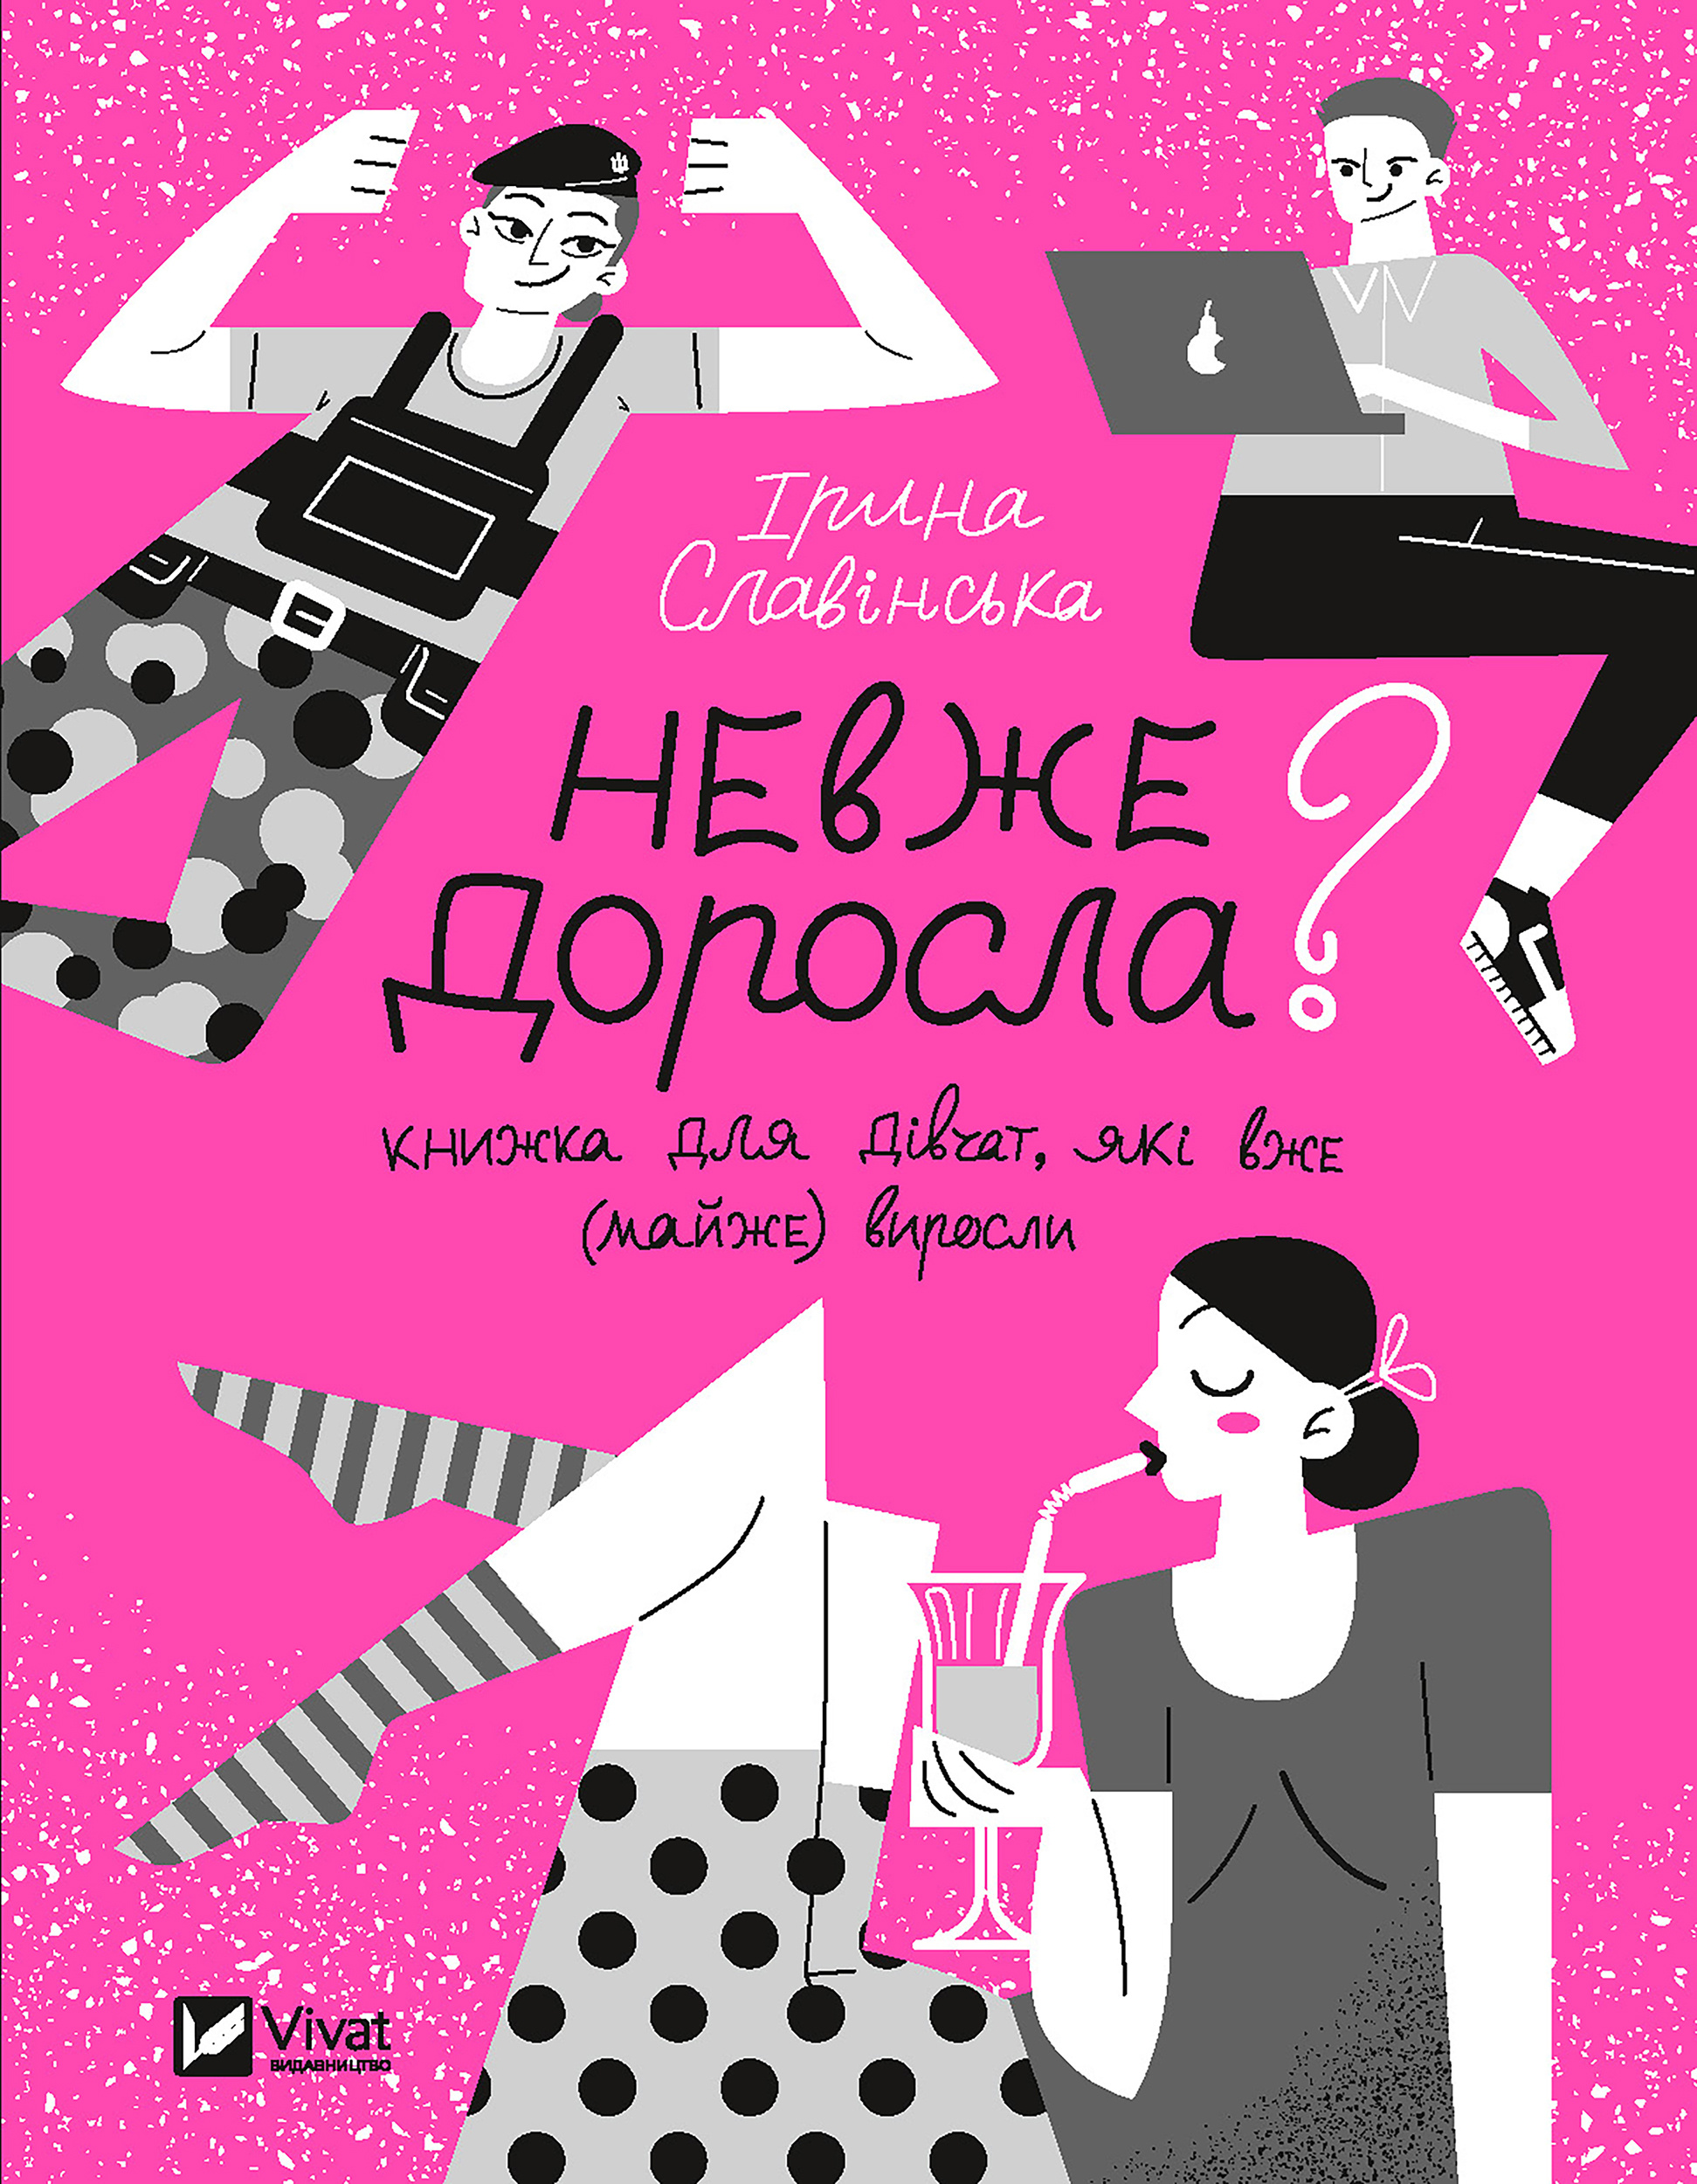 Невже доросла. книжка для дівчат, які вже (майже) виросли. Автор — Ірина Славінська. 